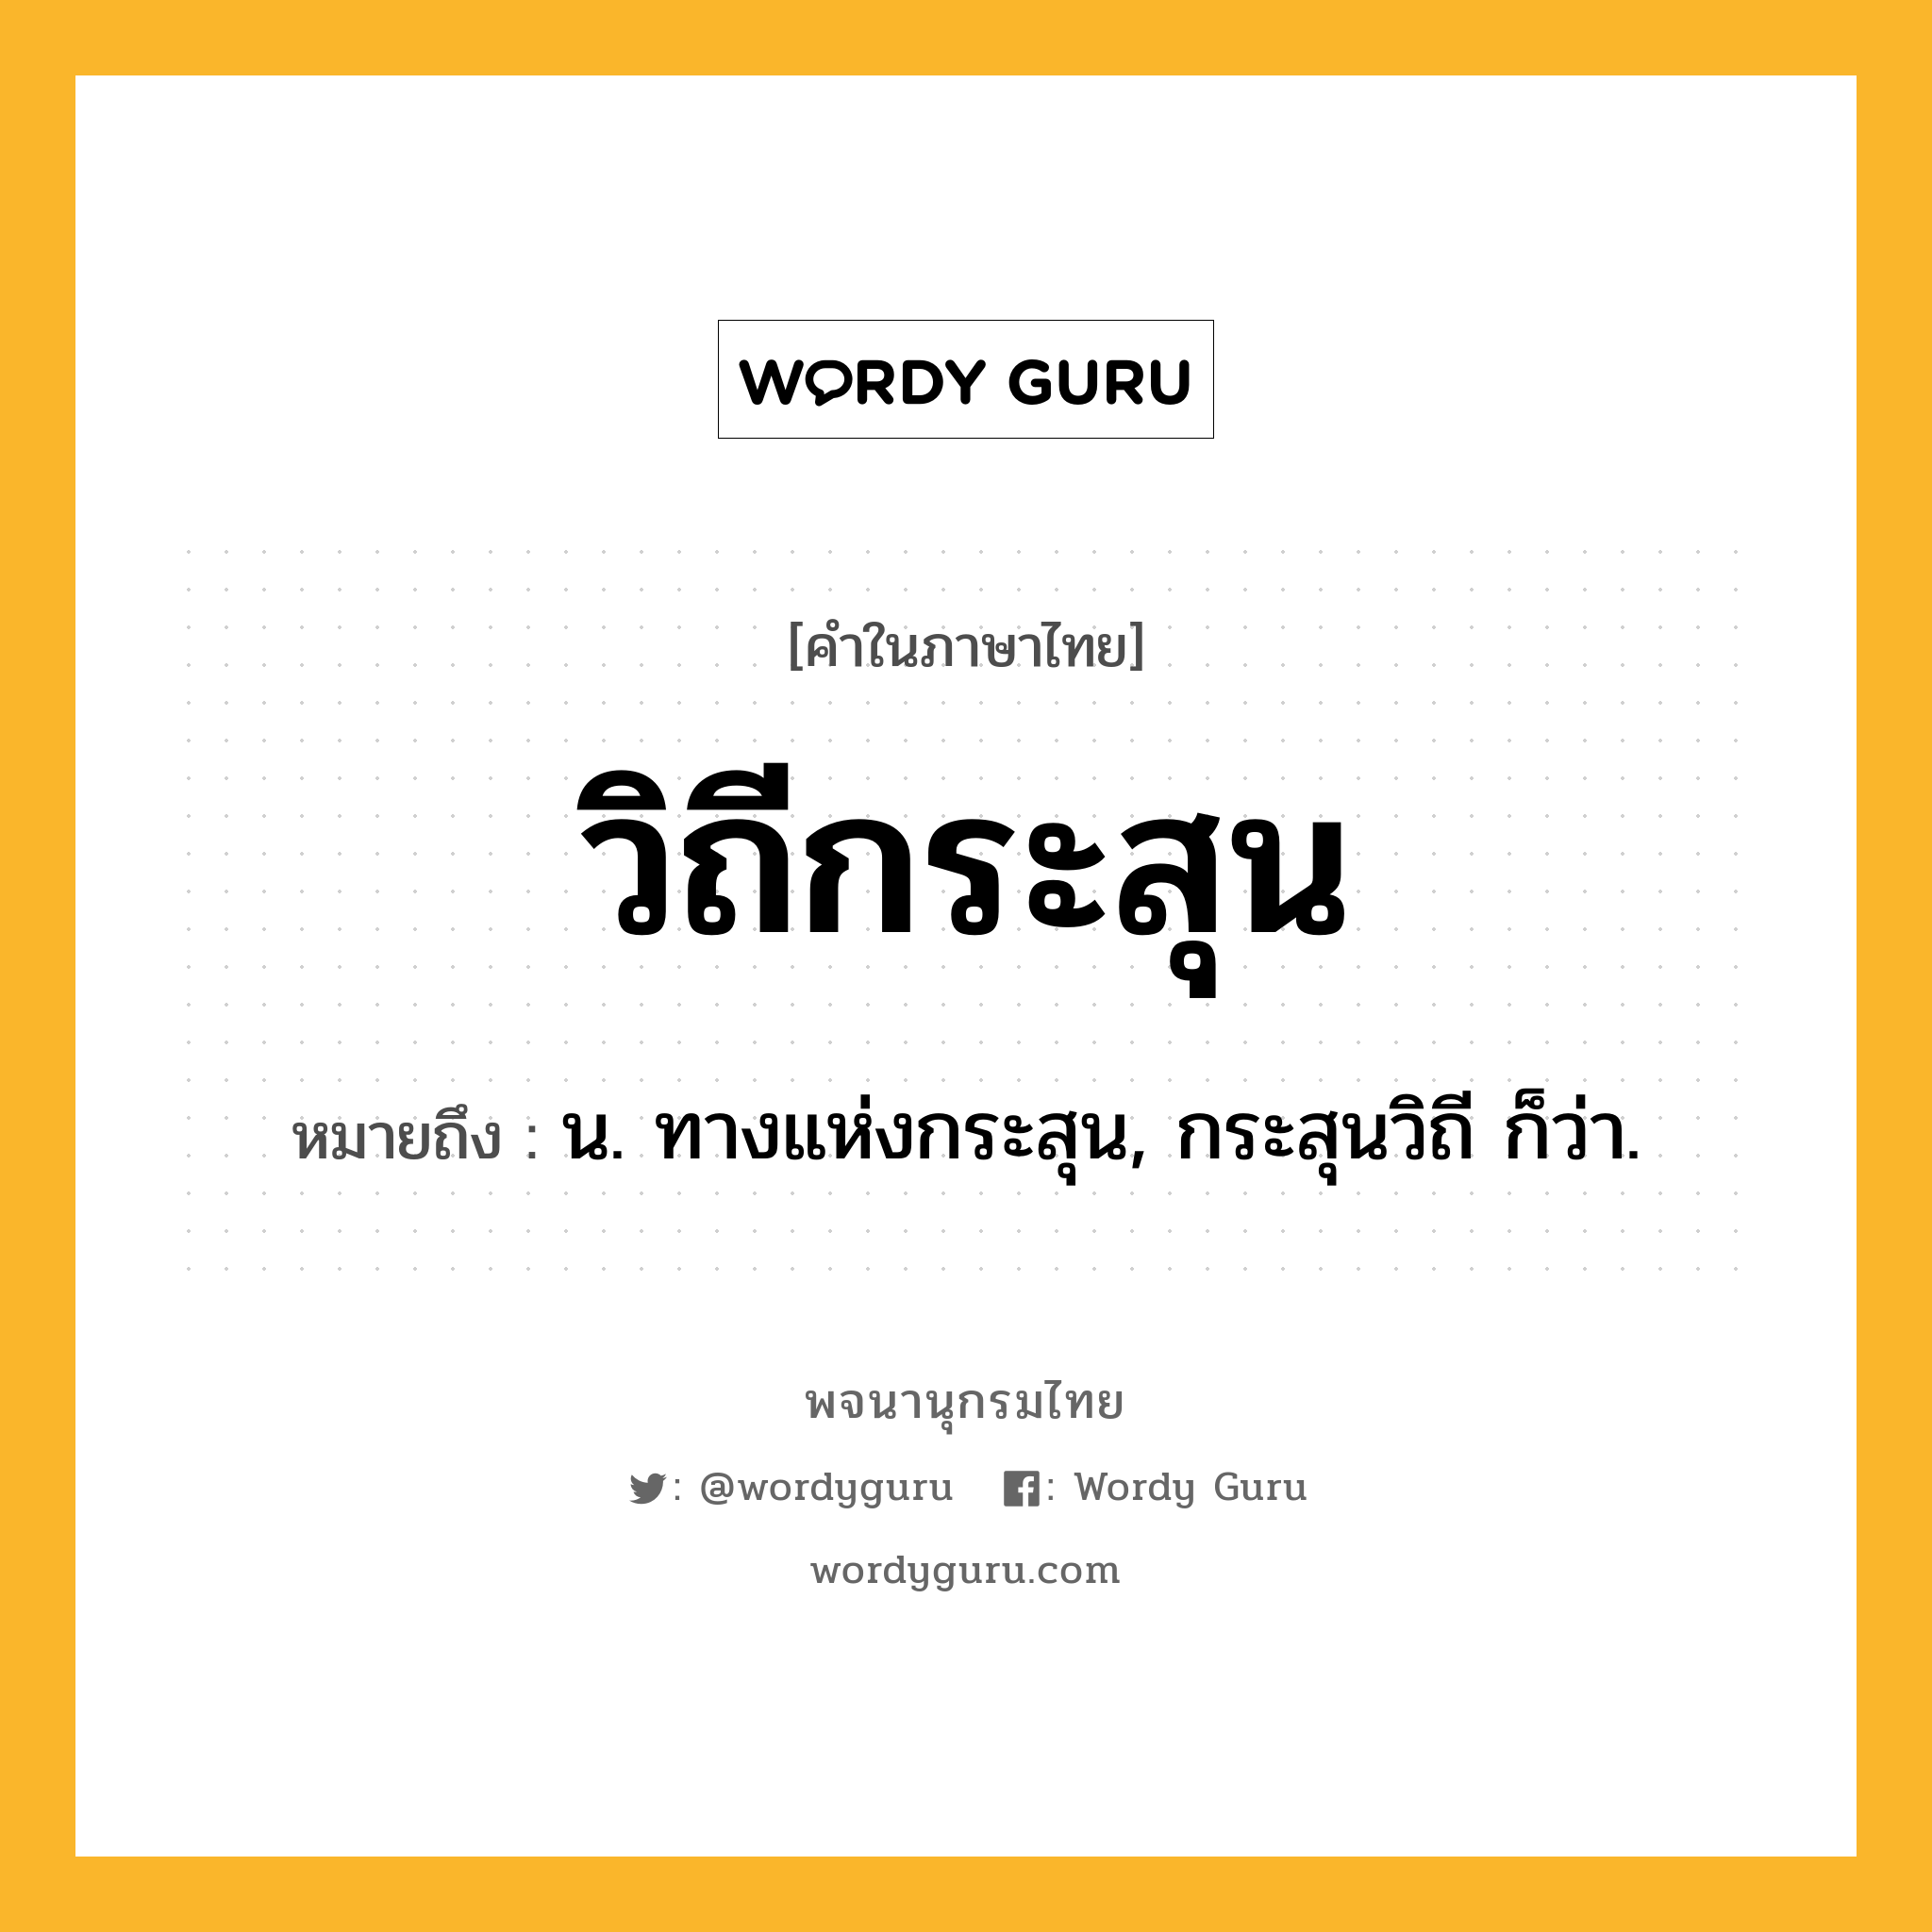 วิถีกระสุน ความหมาย หมายถึงอะไร?, คำในภาษาไทย วิถีกระสุน หมายถึง น. ทางแห่งกระสุน, กระสุนวิถี ก็ว่า.